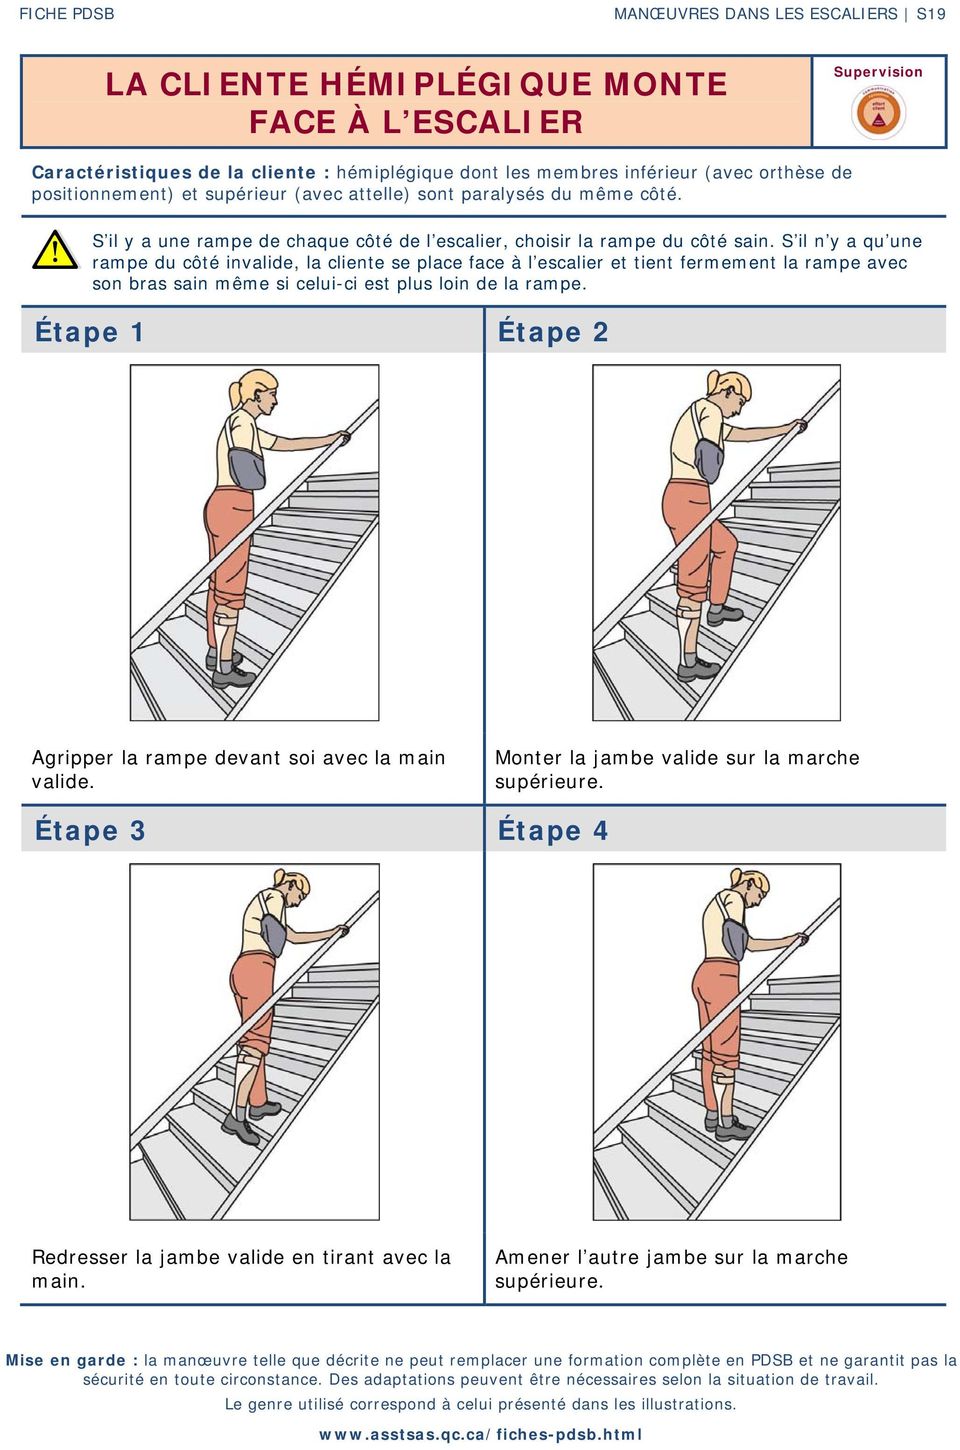 S il n y a qu une rampe du côté invalide, la cliente se place face à l escalier et tient fermement la rampe avec son bras sain même si celui-ci est plus loin de la rampe.